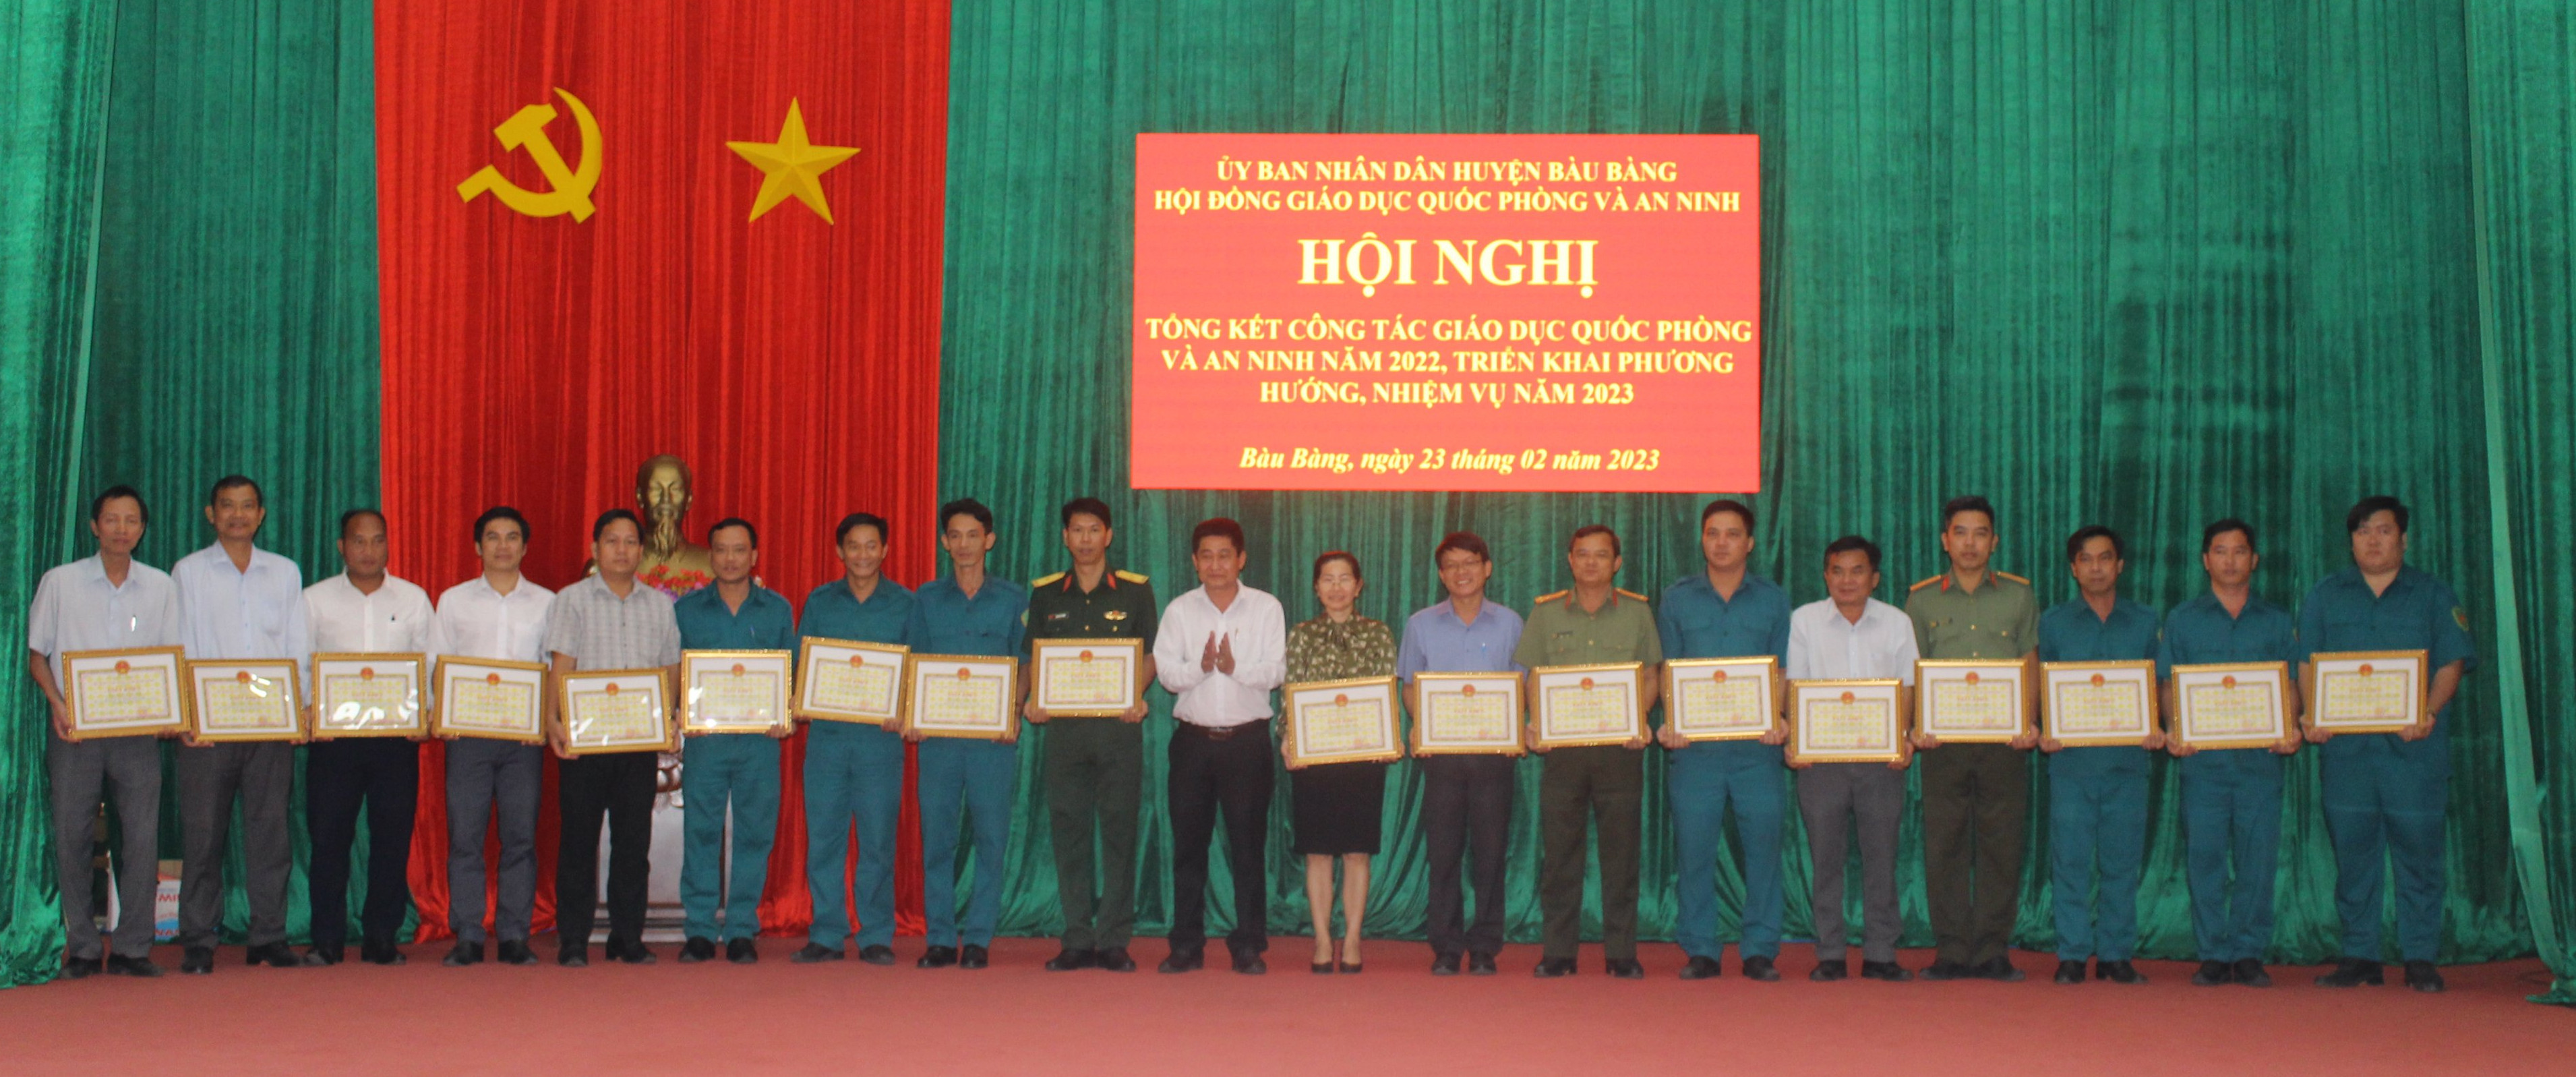 Ông Nguyễn Phú Cường - Phó Chủ tịch UBND, Chủ tịch Hội đồng giáo dục QP&AN huyện khen thưởng cho 8 tập thể và 22 cá nhân đạt thành tích xuất sắc trong công tác giáo dục quốc phòng và an ninh năm 2022.